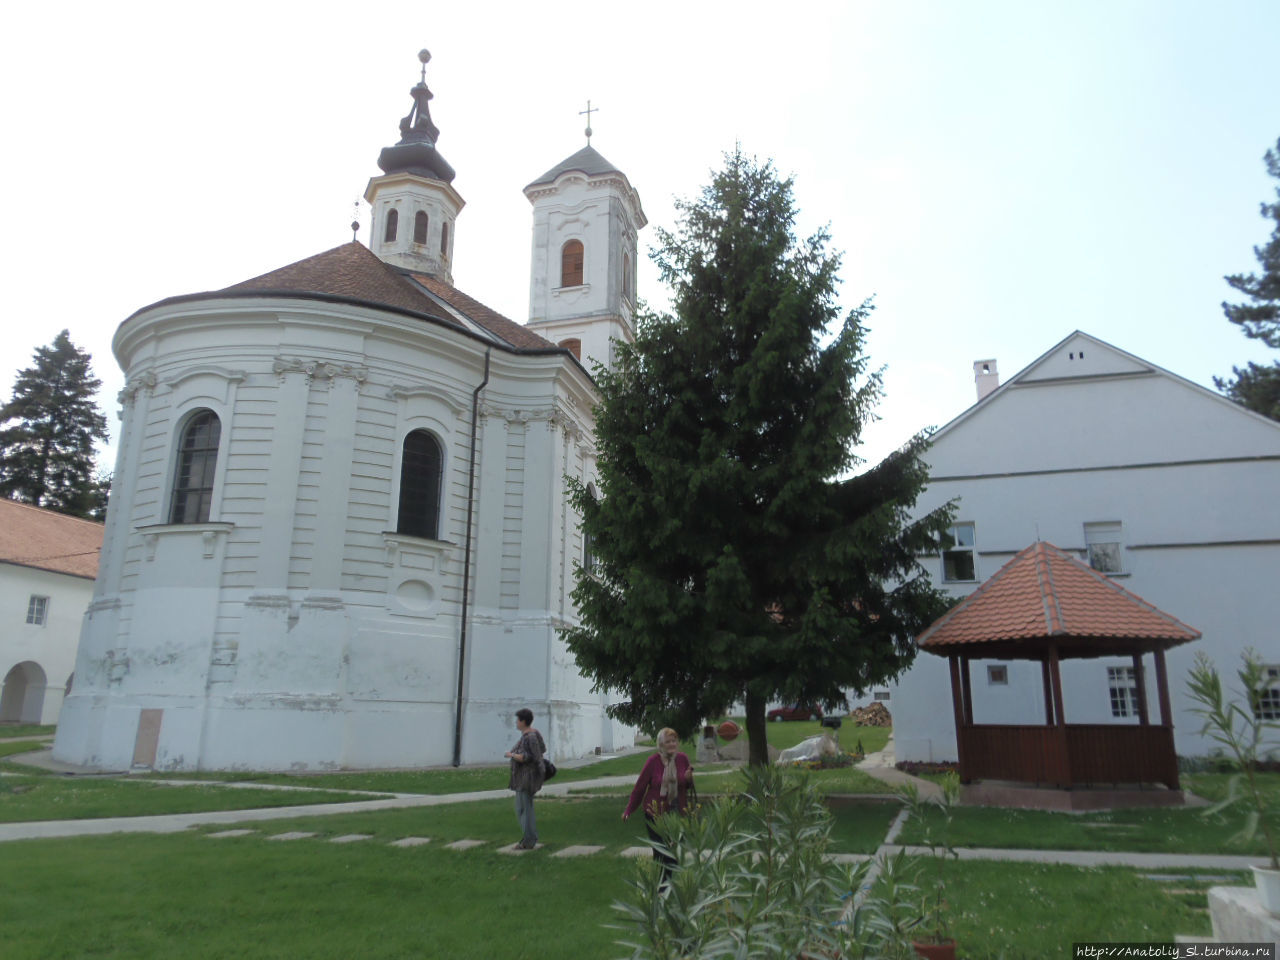 Фрушка гора. Часть 6. Монастырь Врдник. Фрушка-Гора Национальный парк, Сербия